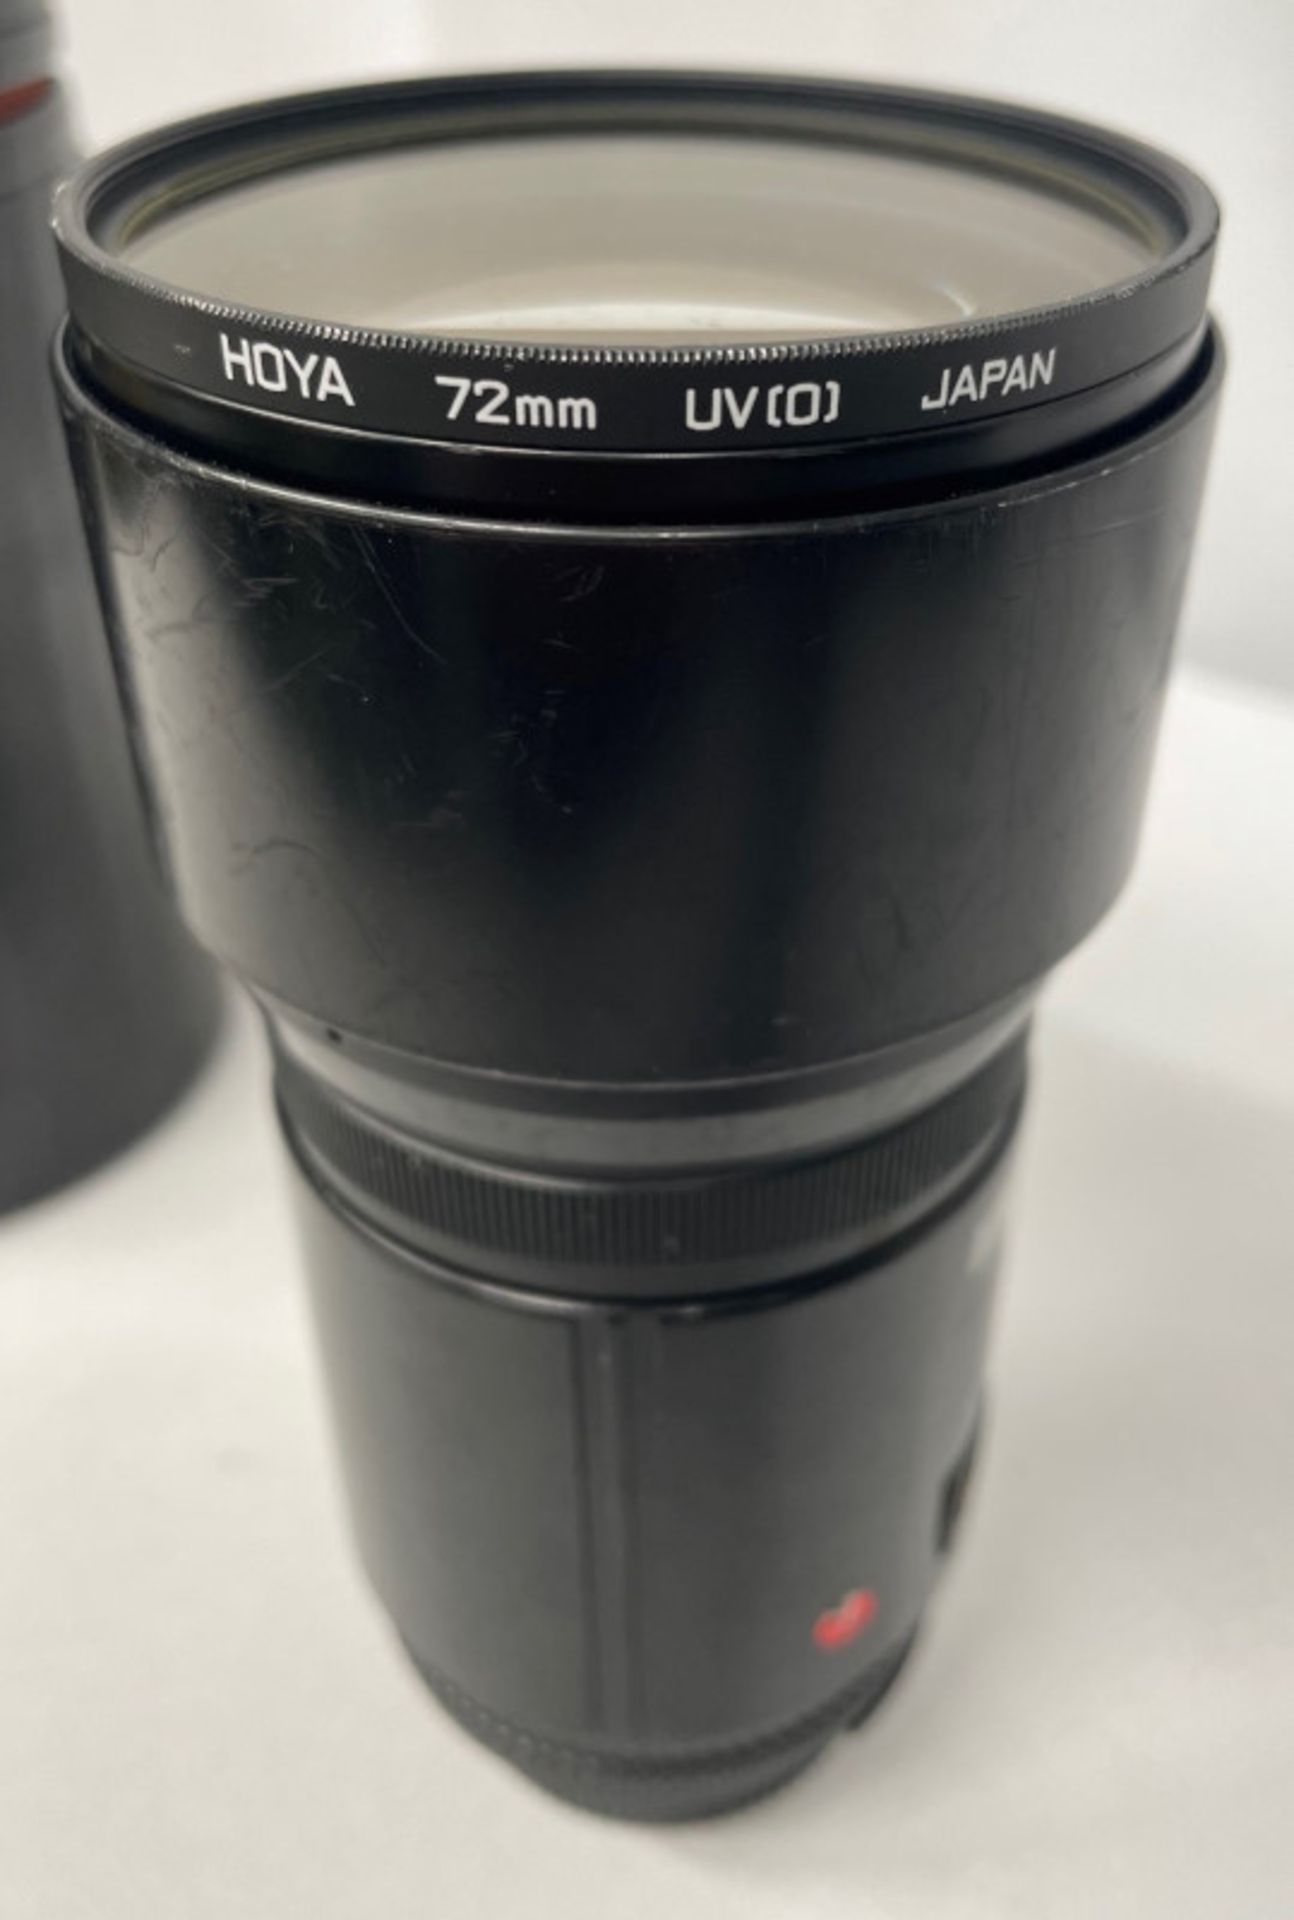 Nikon ED AF Nikkor 180mm - 1:2.8 Lens - Serial No. 203951 with HOYA 72mm UV(O) Filter in Nikon case - Image 6 of 7